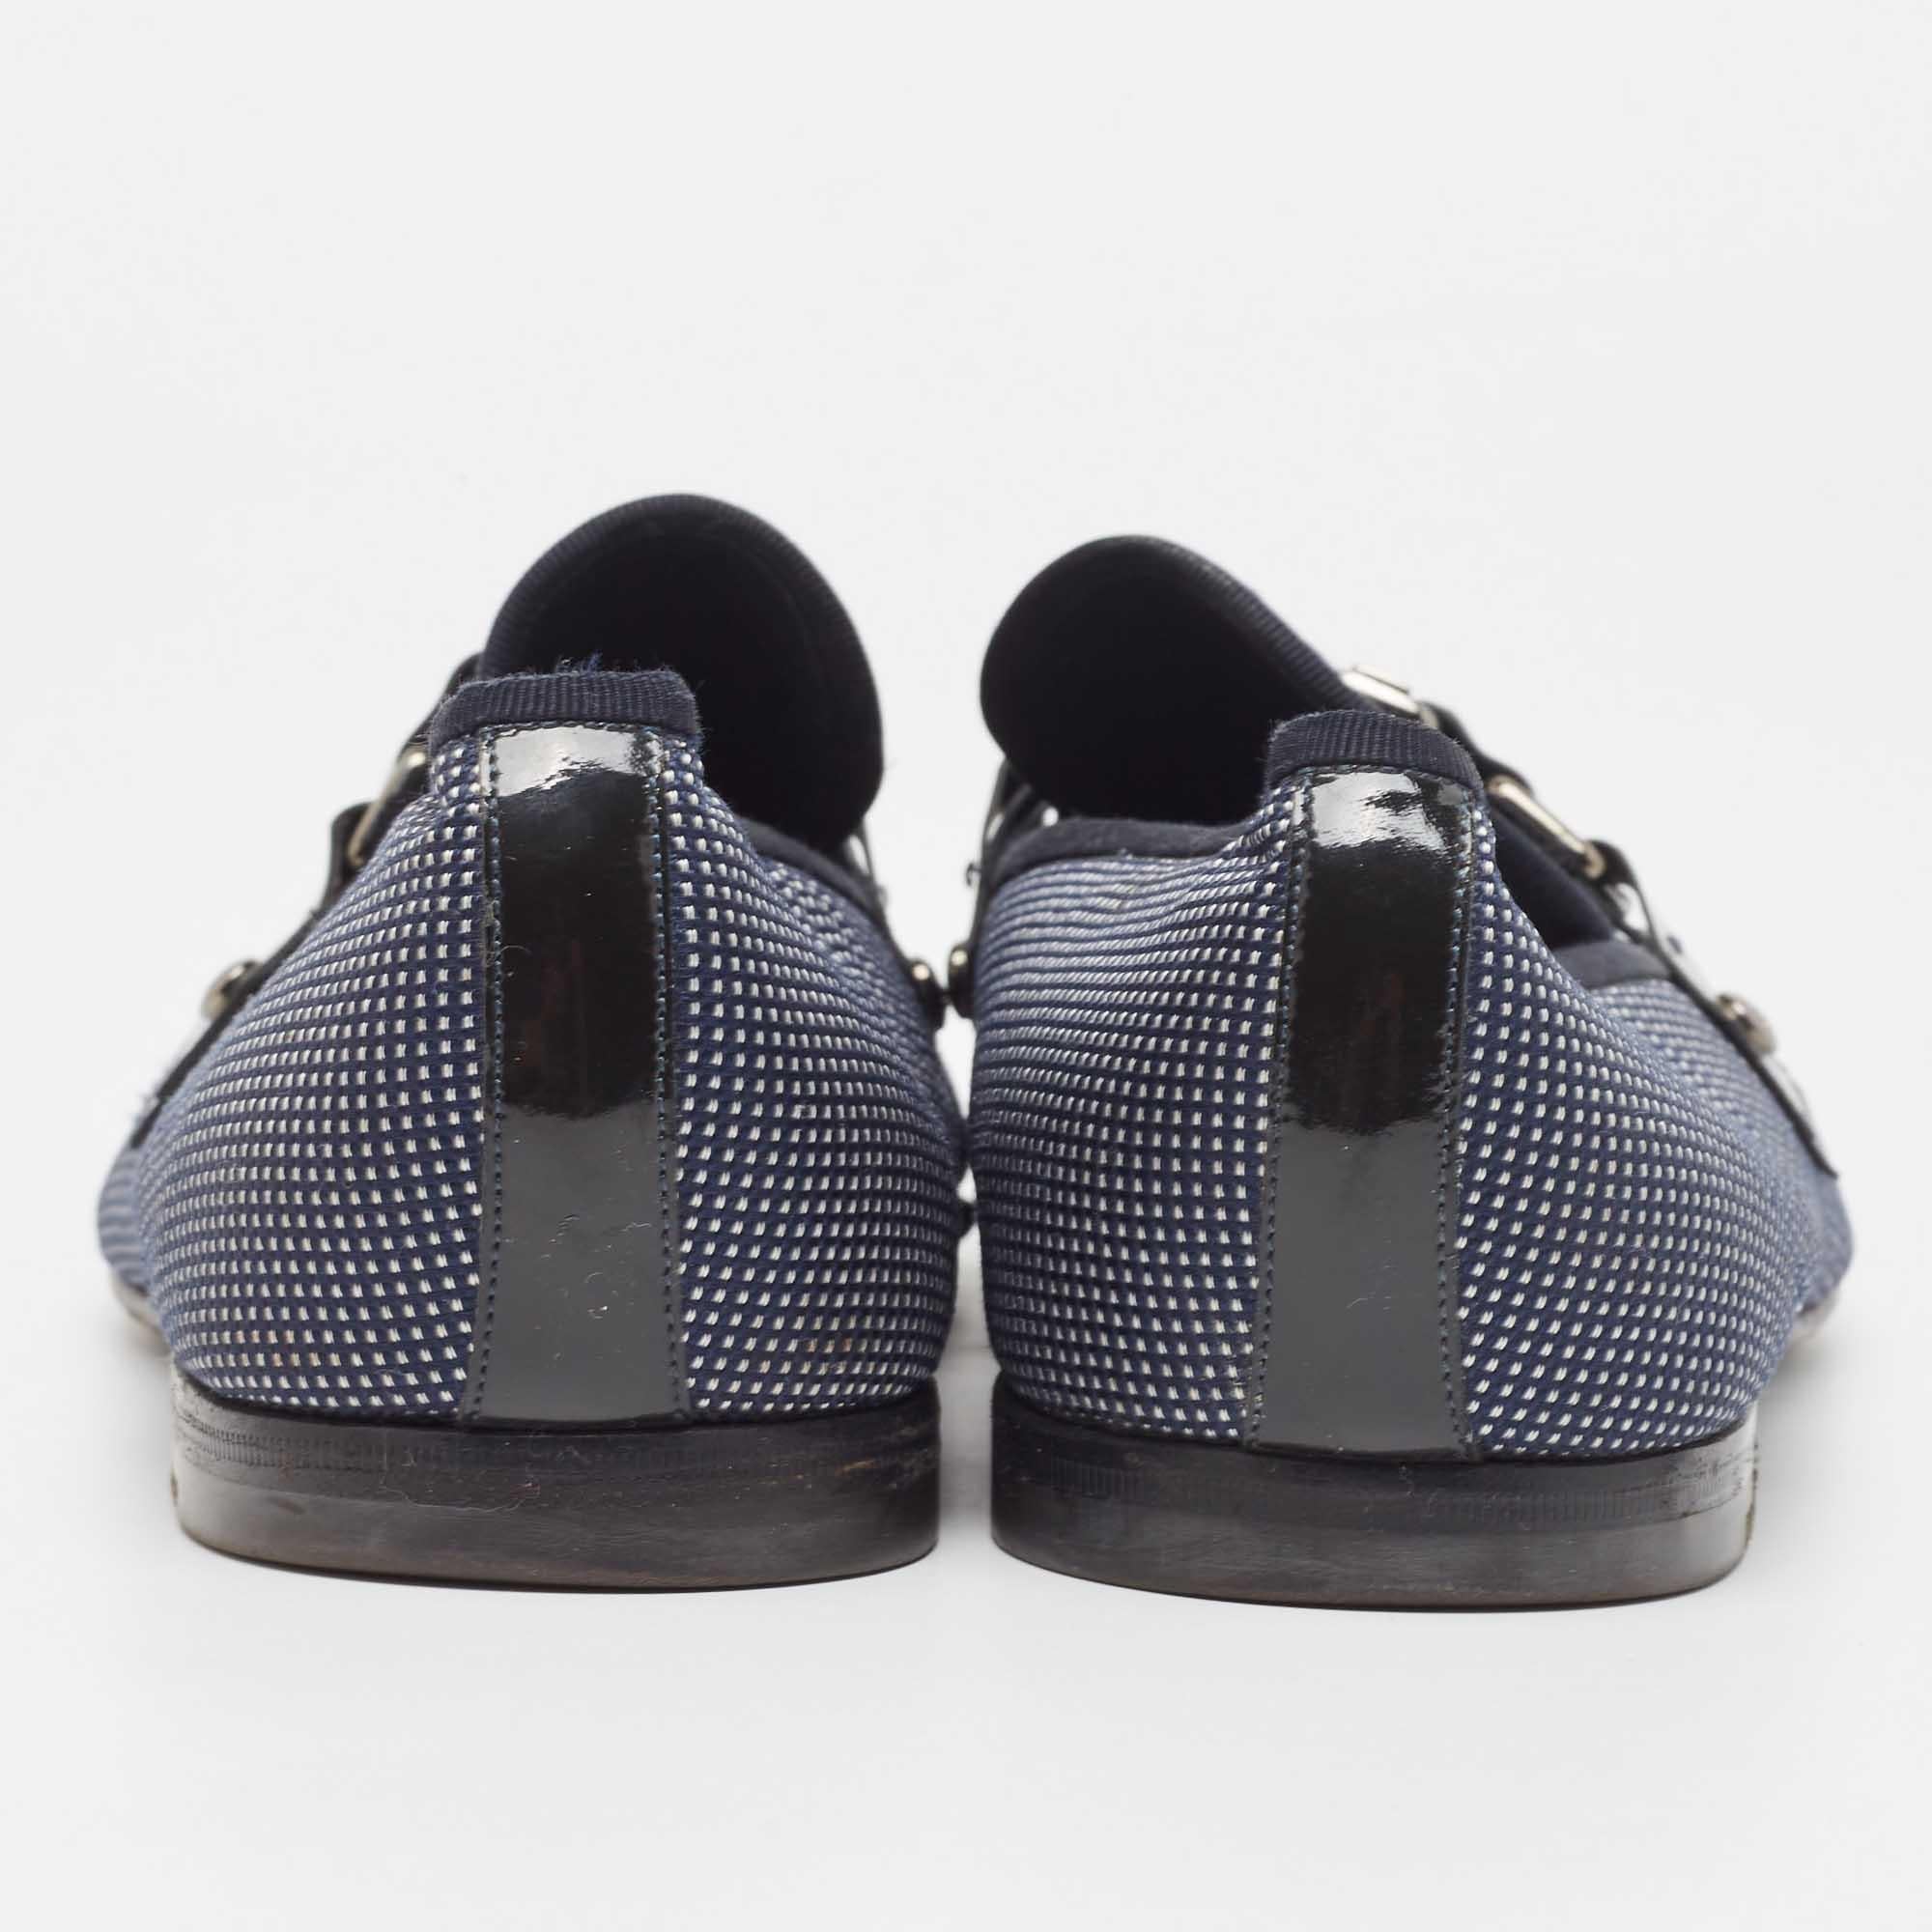 Louis Vuitton Navy Blue/White Canvas Hockenheim Loafers Size 43.5 1